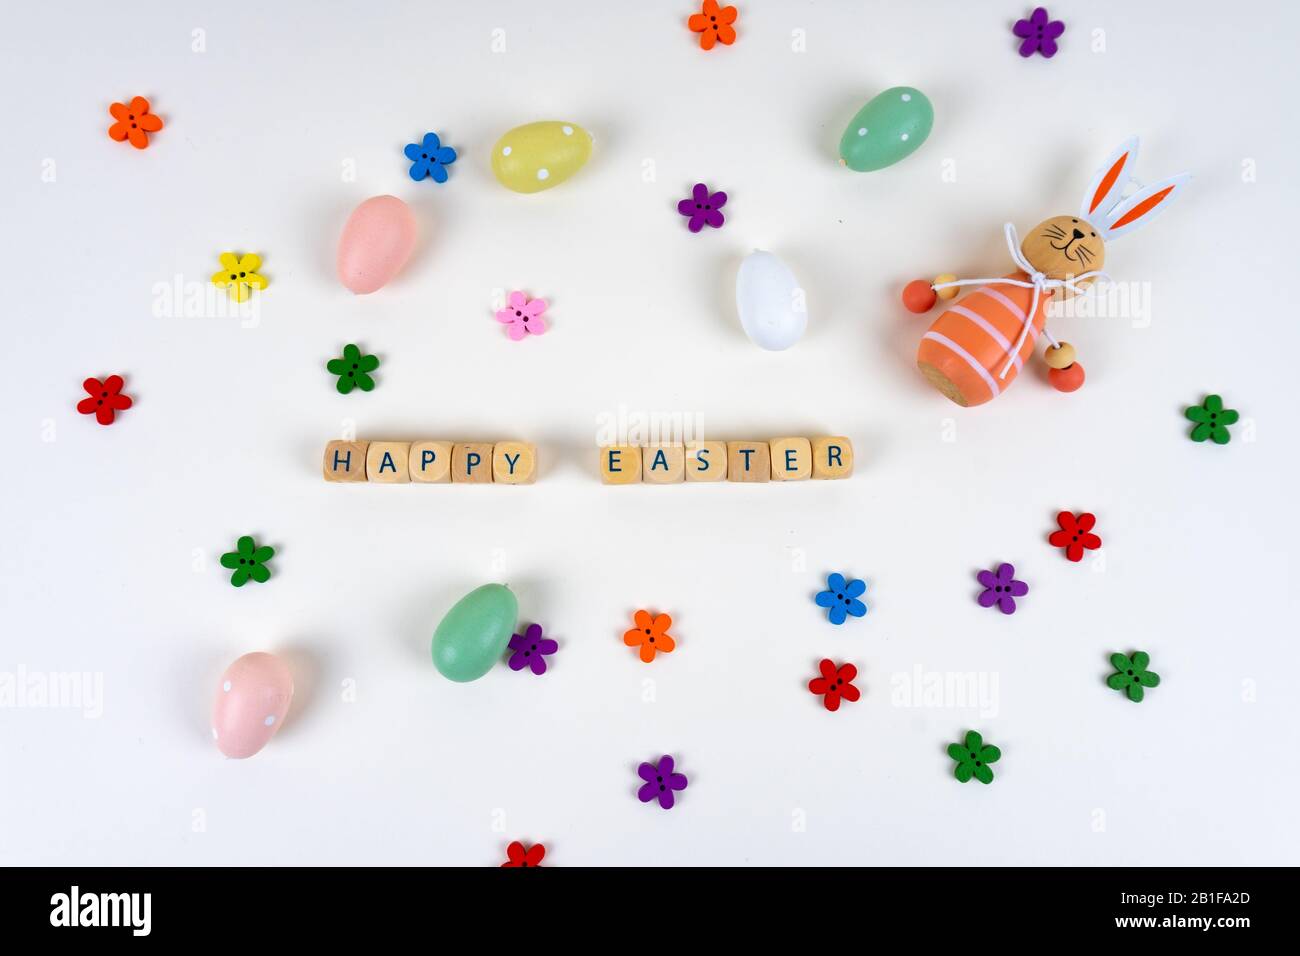 Blocs en bois avec des lettres disant "Joyeuses Pâques" devant des oeufs de pâques colorés, des fleurs colorées et un lapin de pâques sur fond blanc avec des copies Banque D'Images